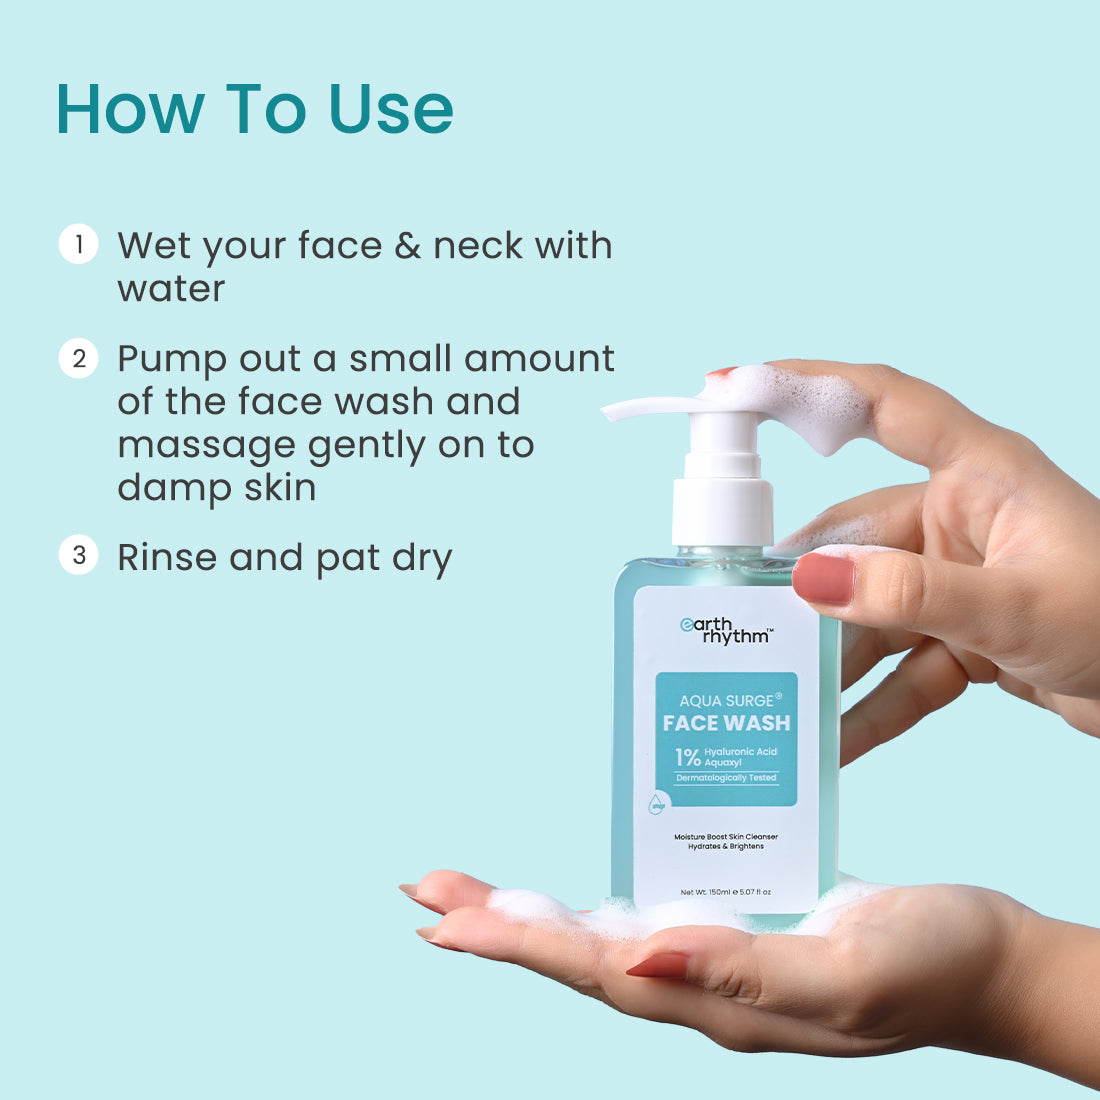 How to use aqua surge face wash